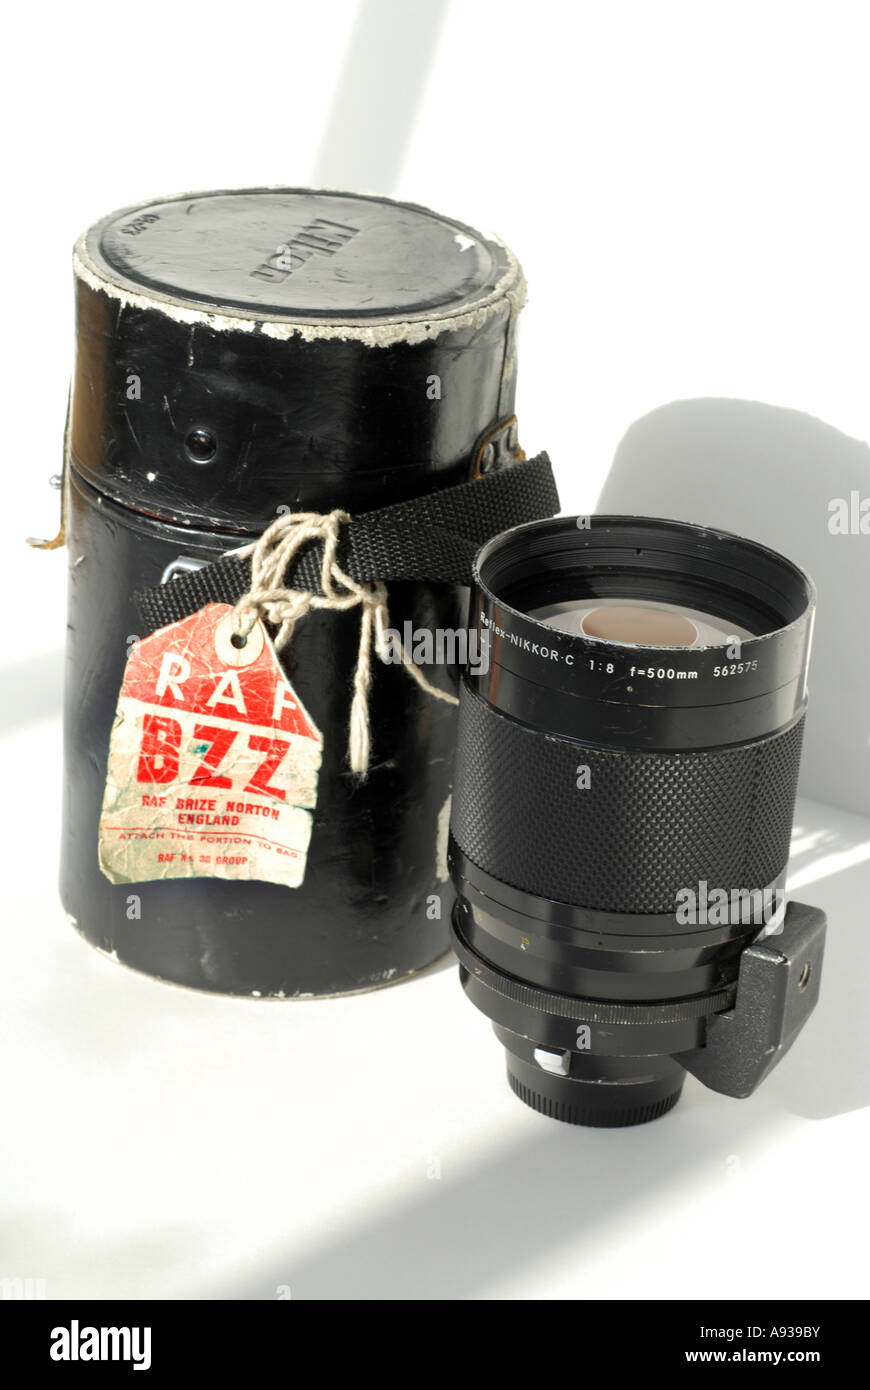 500mm mirror lens Banque de photographies et d'images à haute résolution -  Alamy